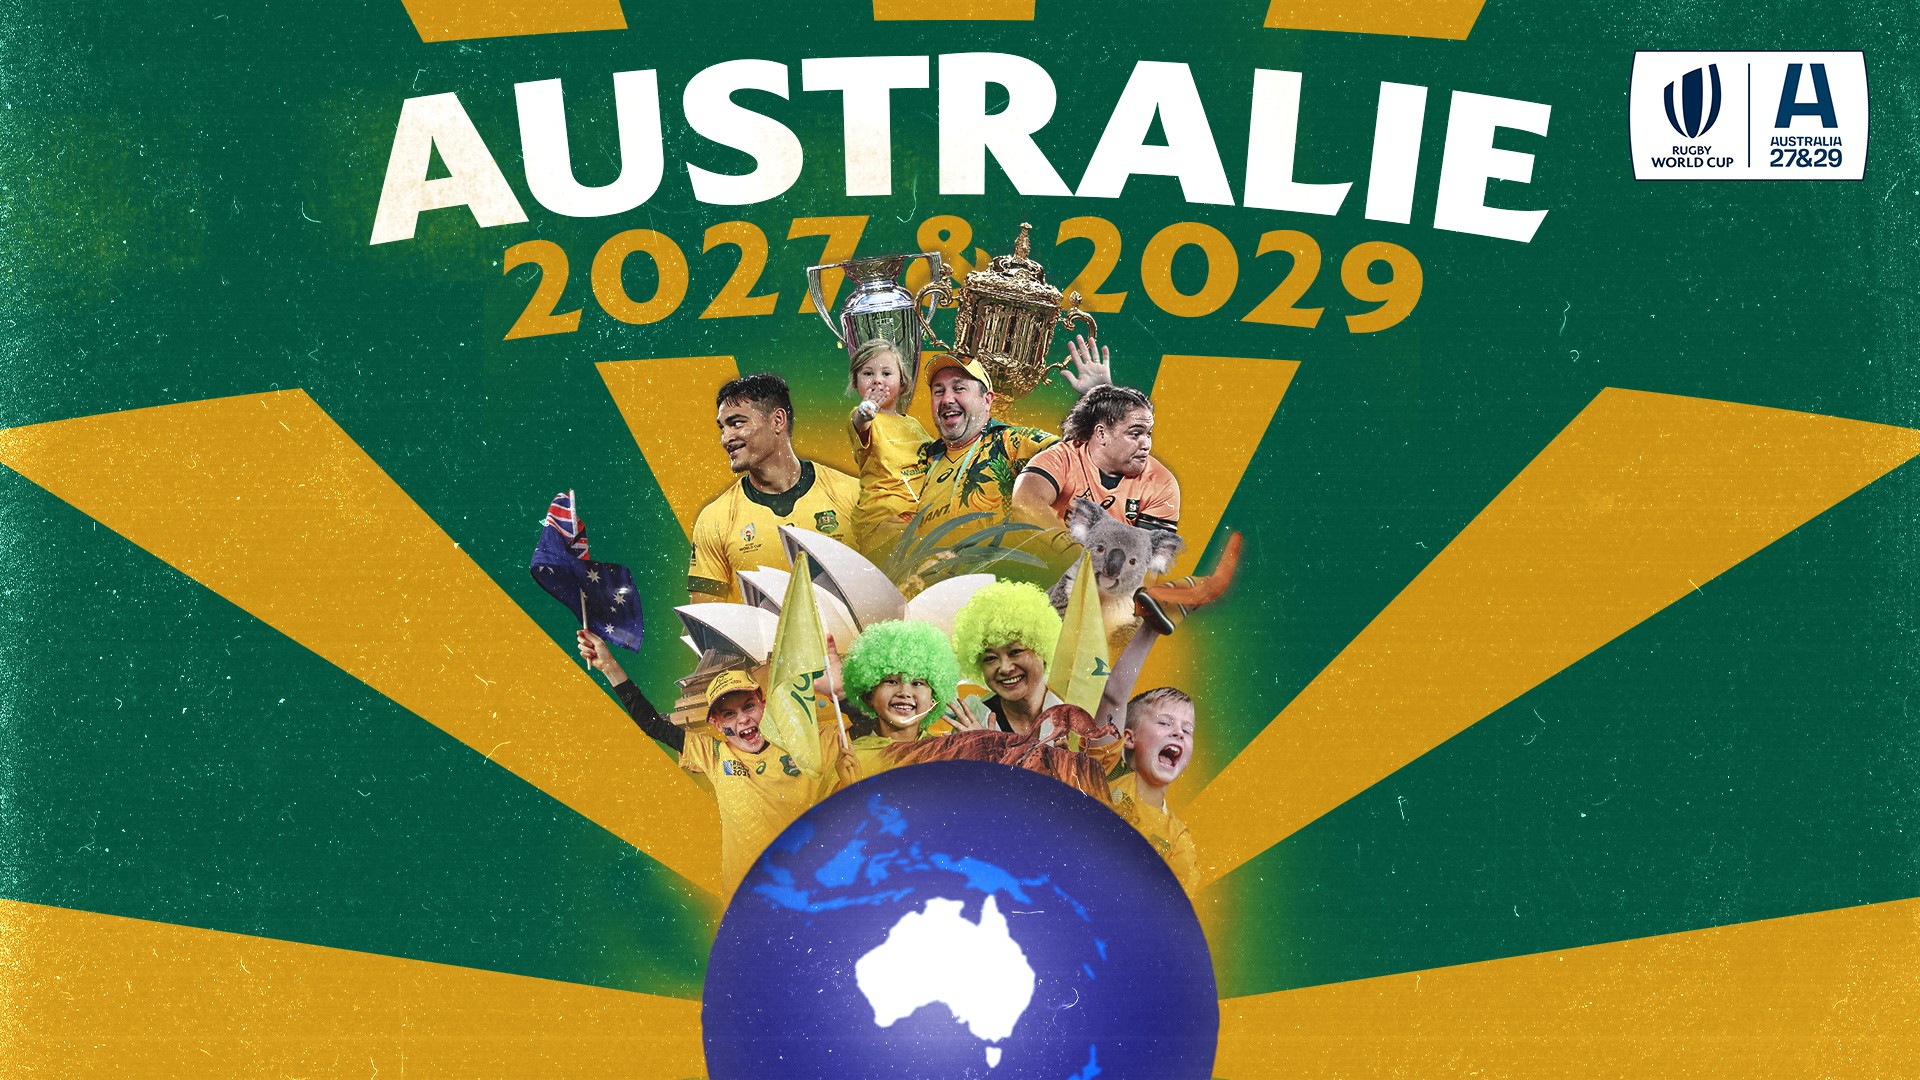 Coupe du Monde de Rugby – Australie 2027 et 2029